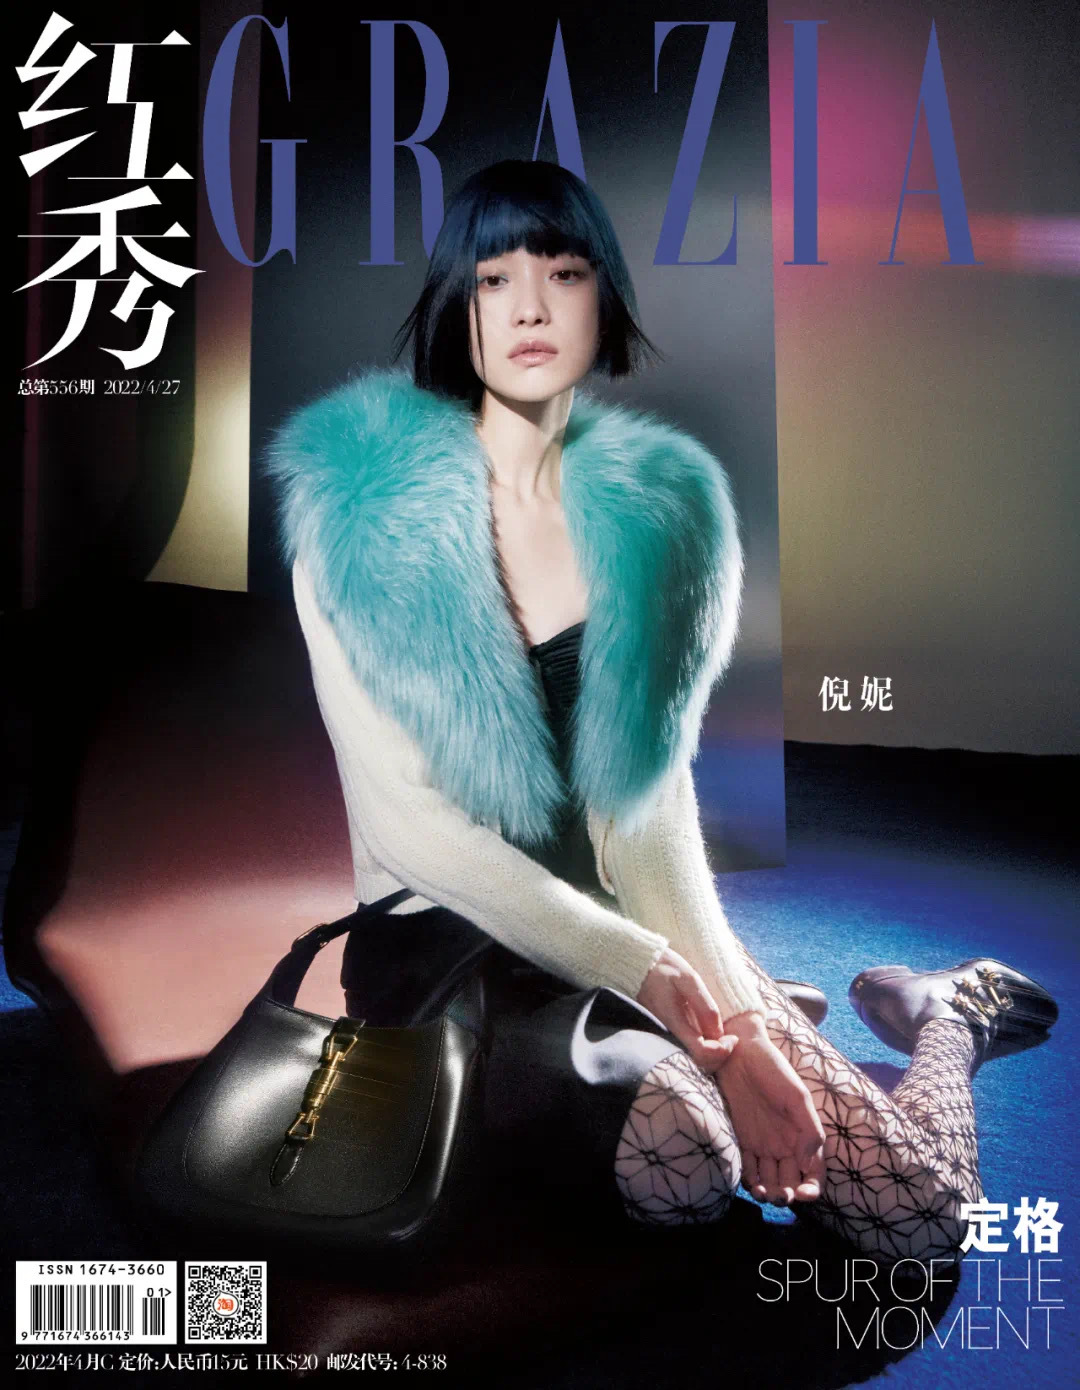 倪妮 x 红秀GRAZIA 封面大片  描上靛青眼妆梳起短发的“东方机械姬”